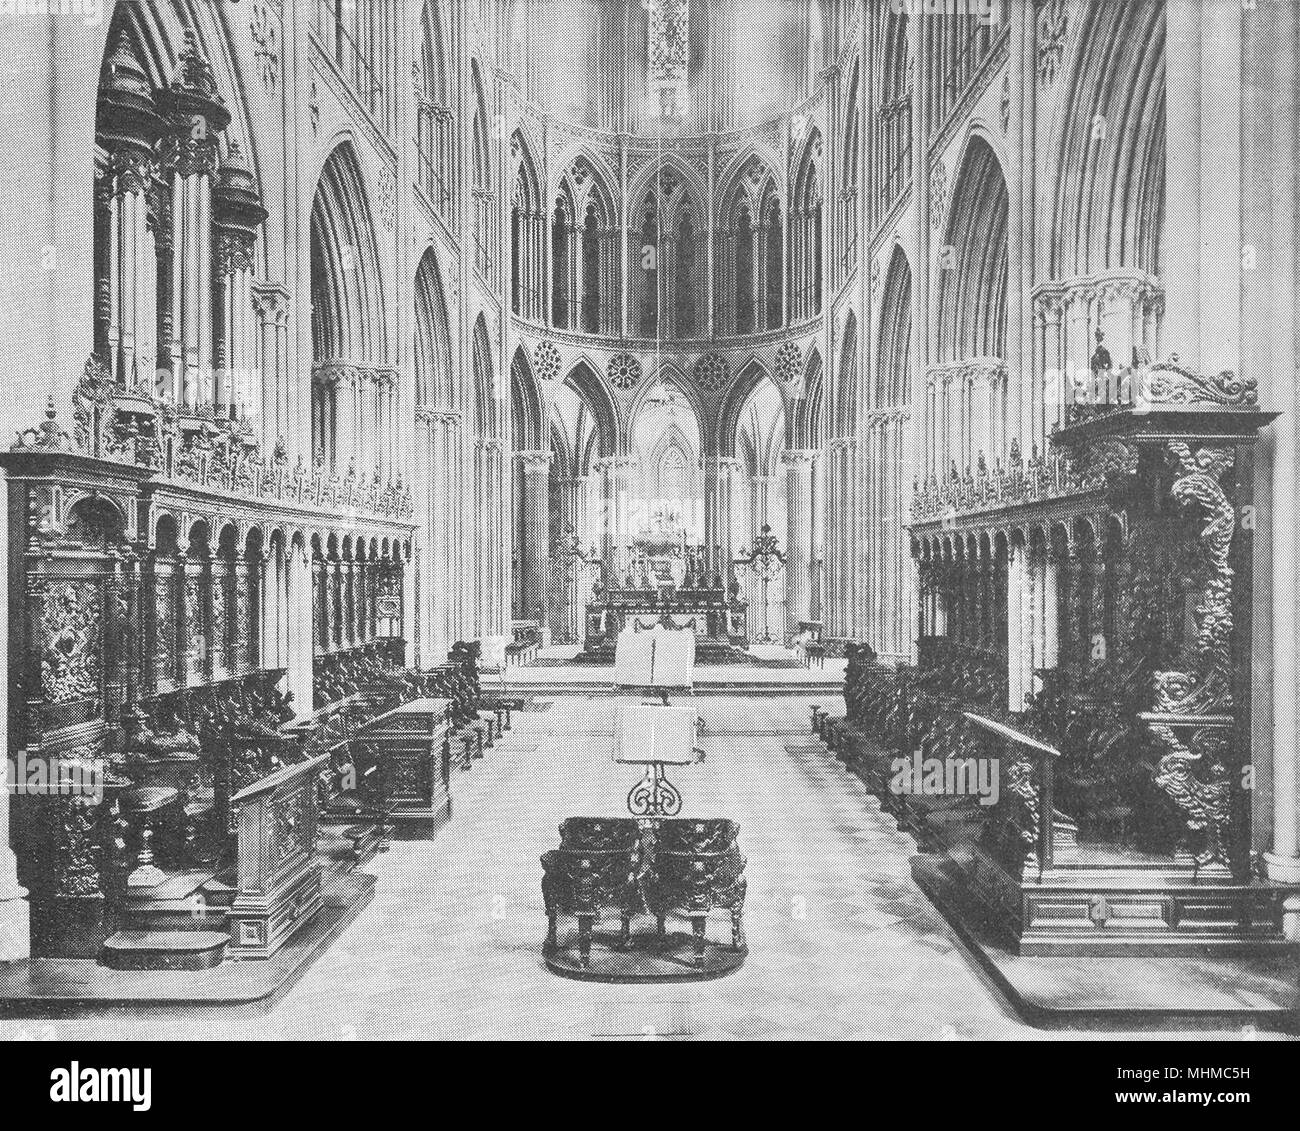 Le calvados. Choeur de la cathédrale de Bayeux 1900 ancienne imprimer photo Banque D'Images